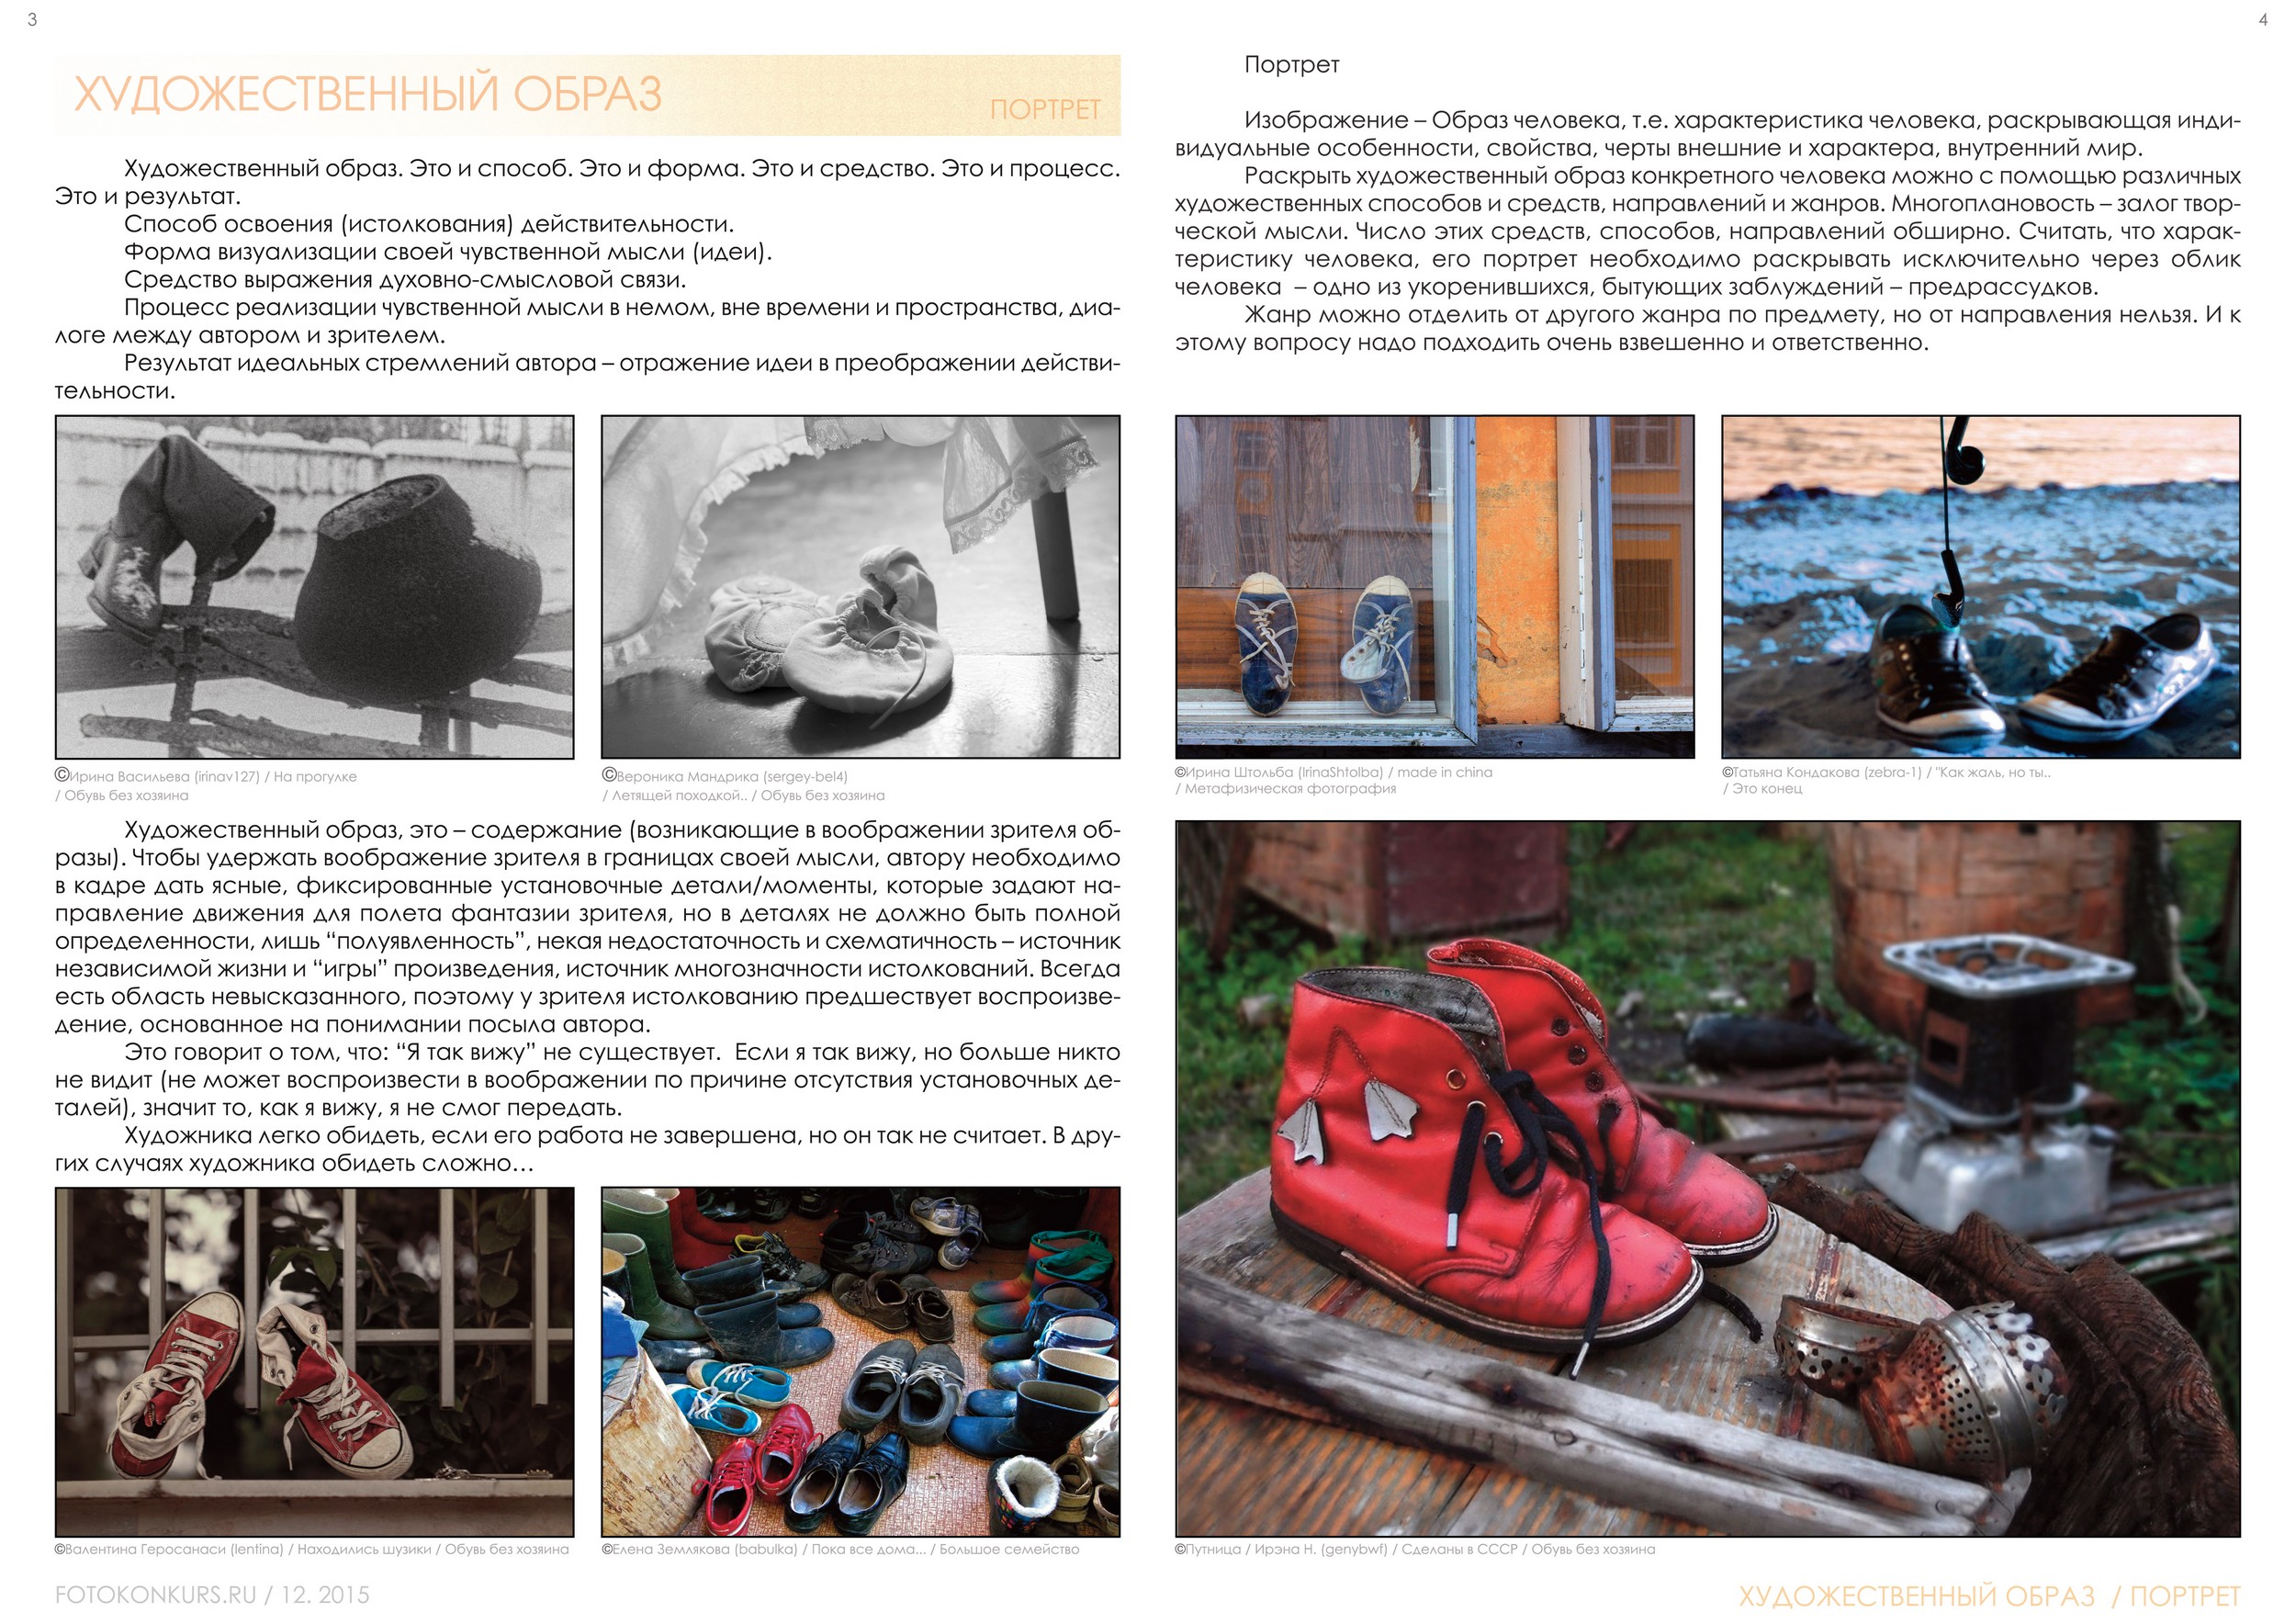 Журнал Фотоконкурс.ру, Выпуск 2, декабрь-2015, страница 3-4